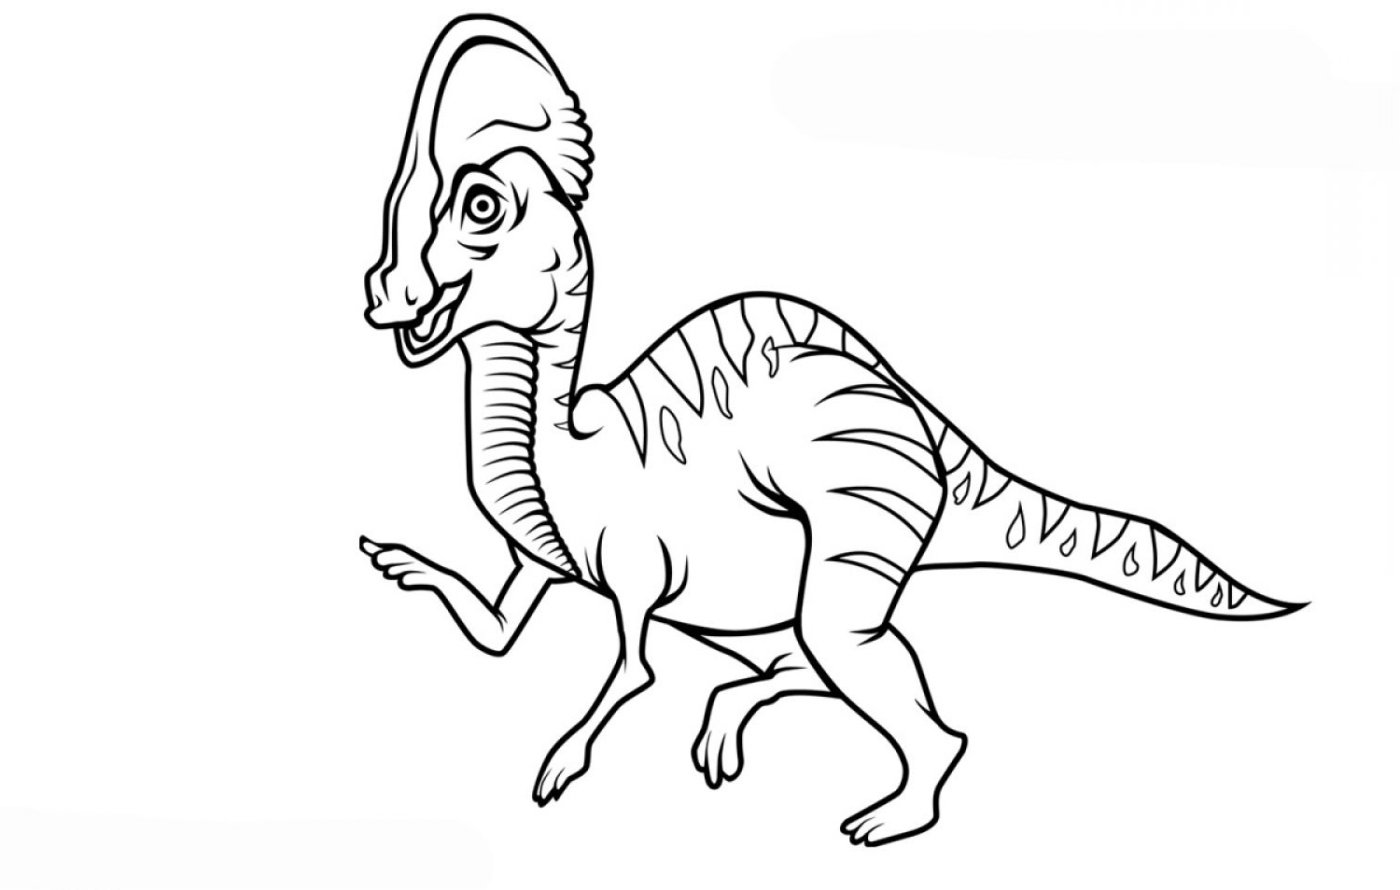 Dibujos para colorear de dinosaurios para imprimir y descargar. -  